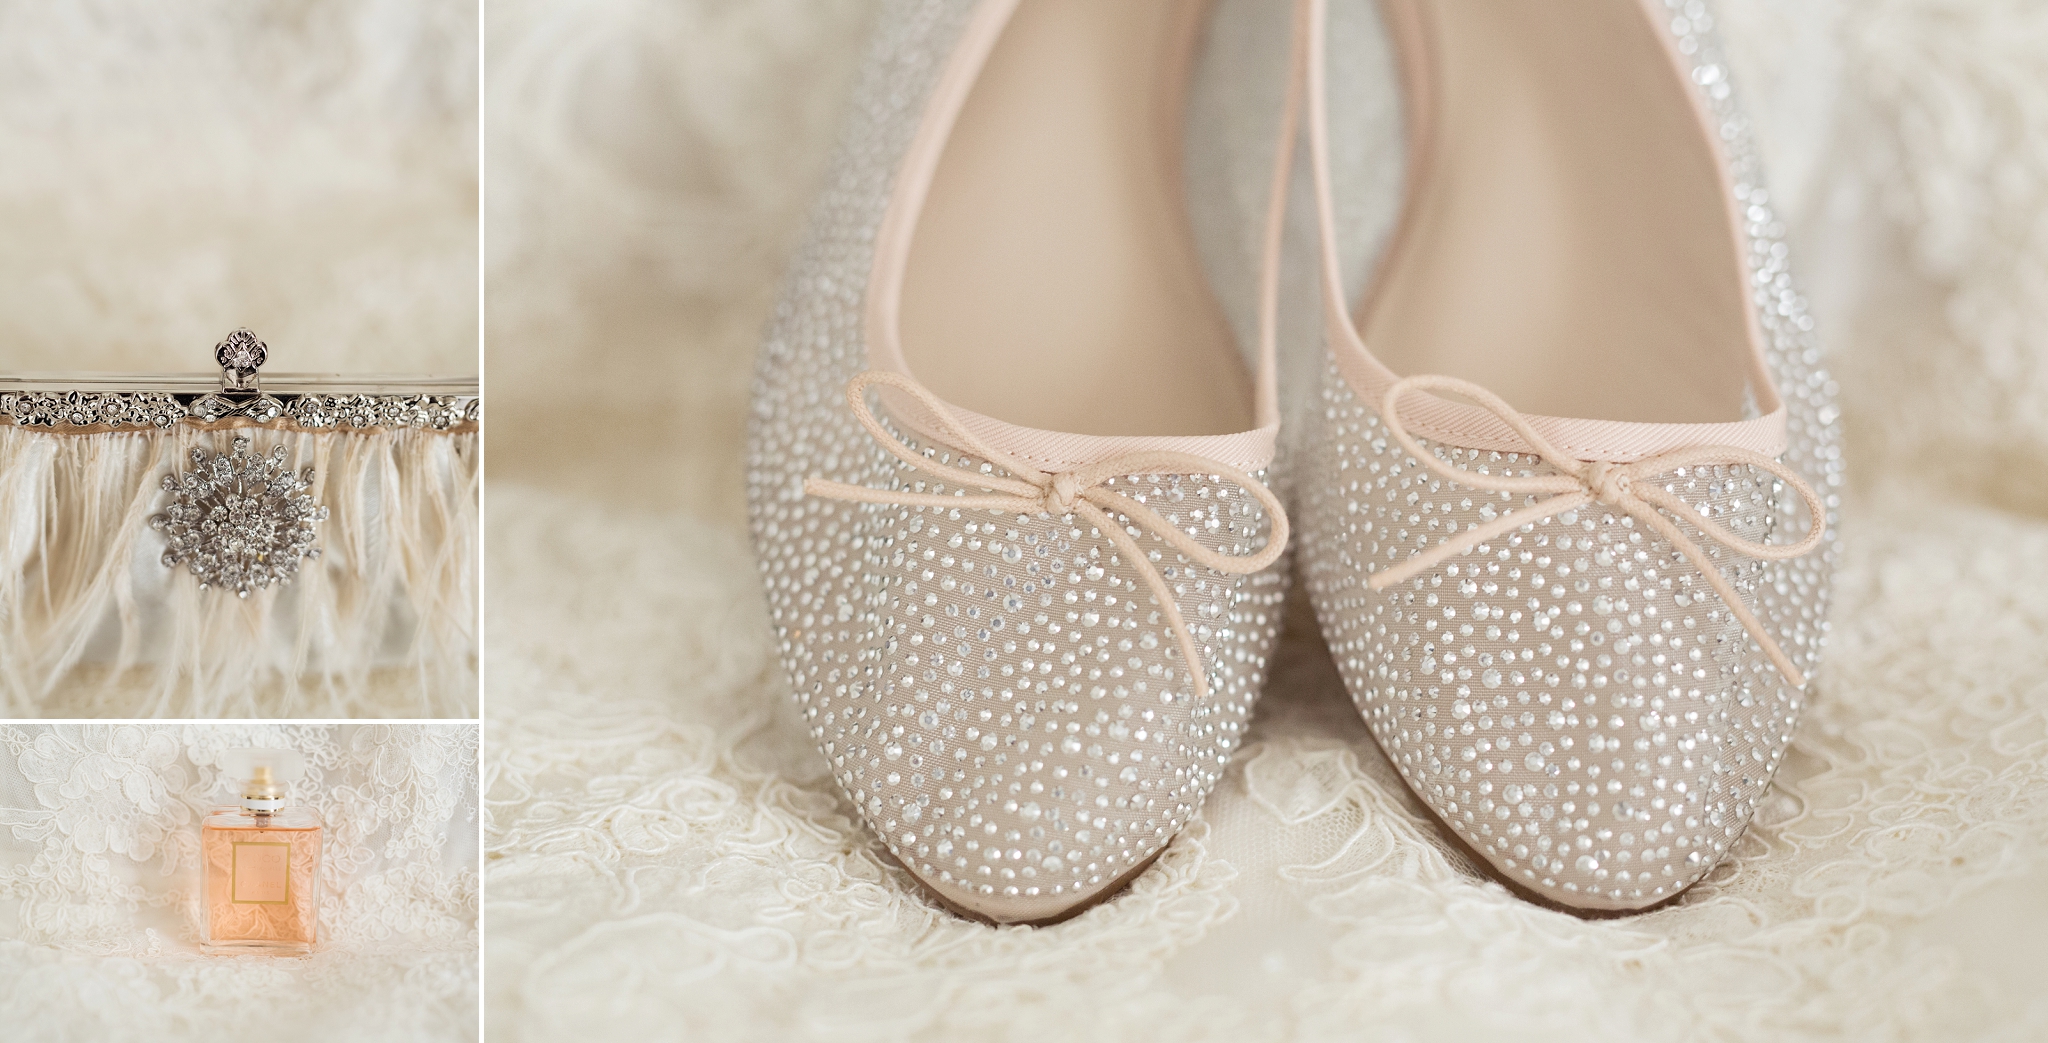 brides shoes photo edmonton